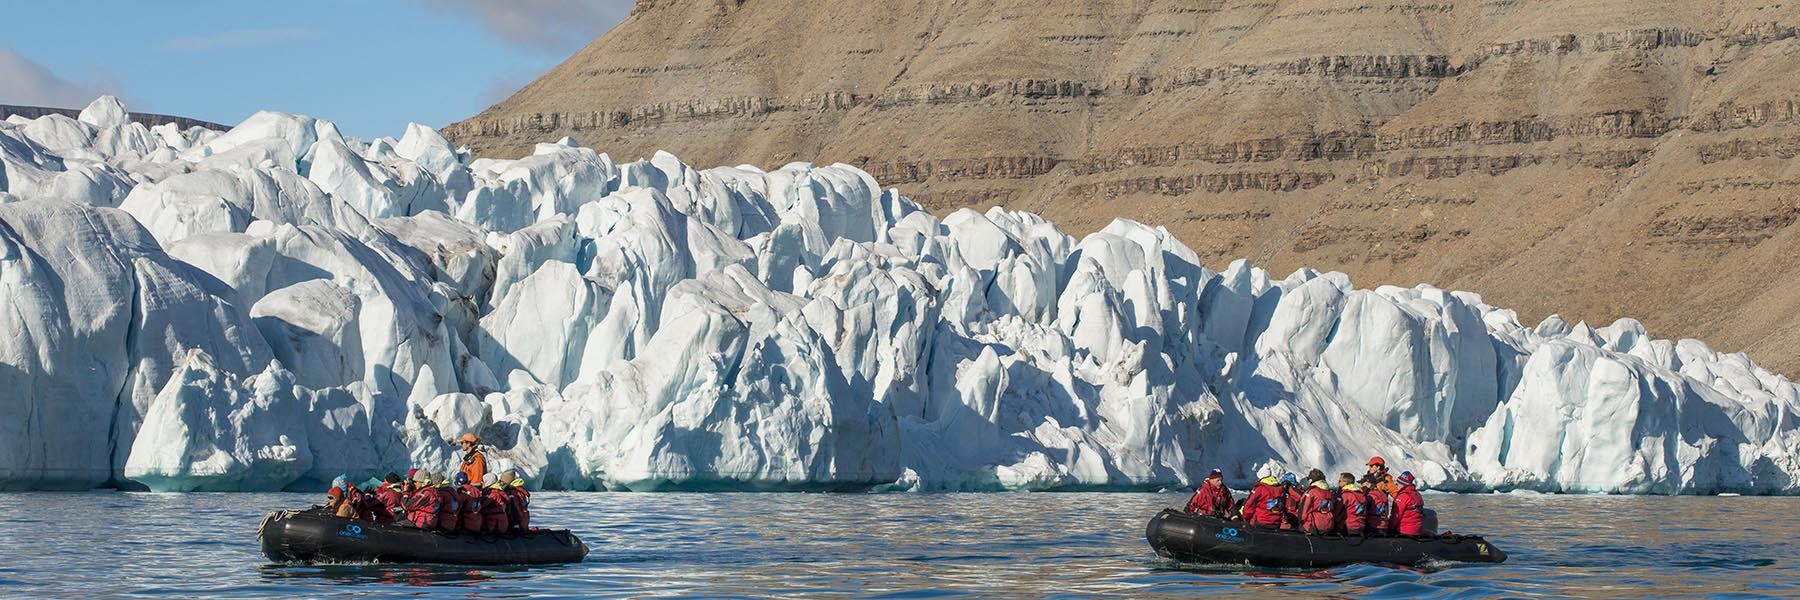 Schlauchboot mit Passagieren von One Ocean Expeditions vor Croker Gletscher, Croker Bay, Devon Island, Nunavut, Arktis, Kanada